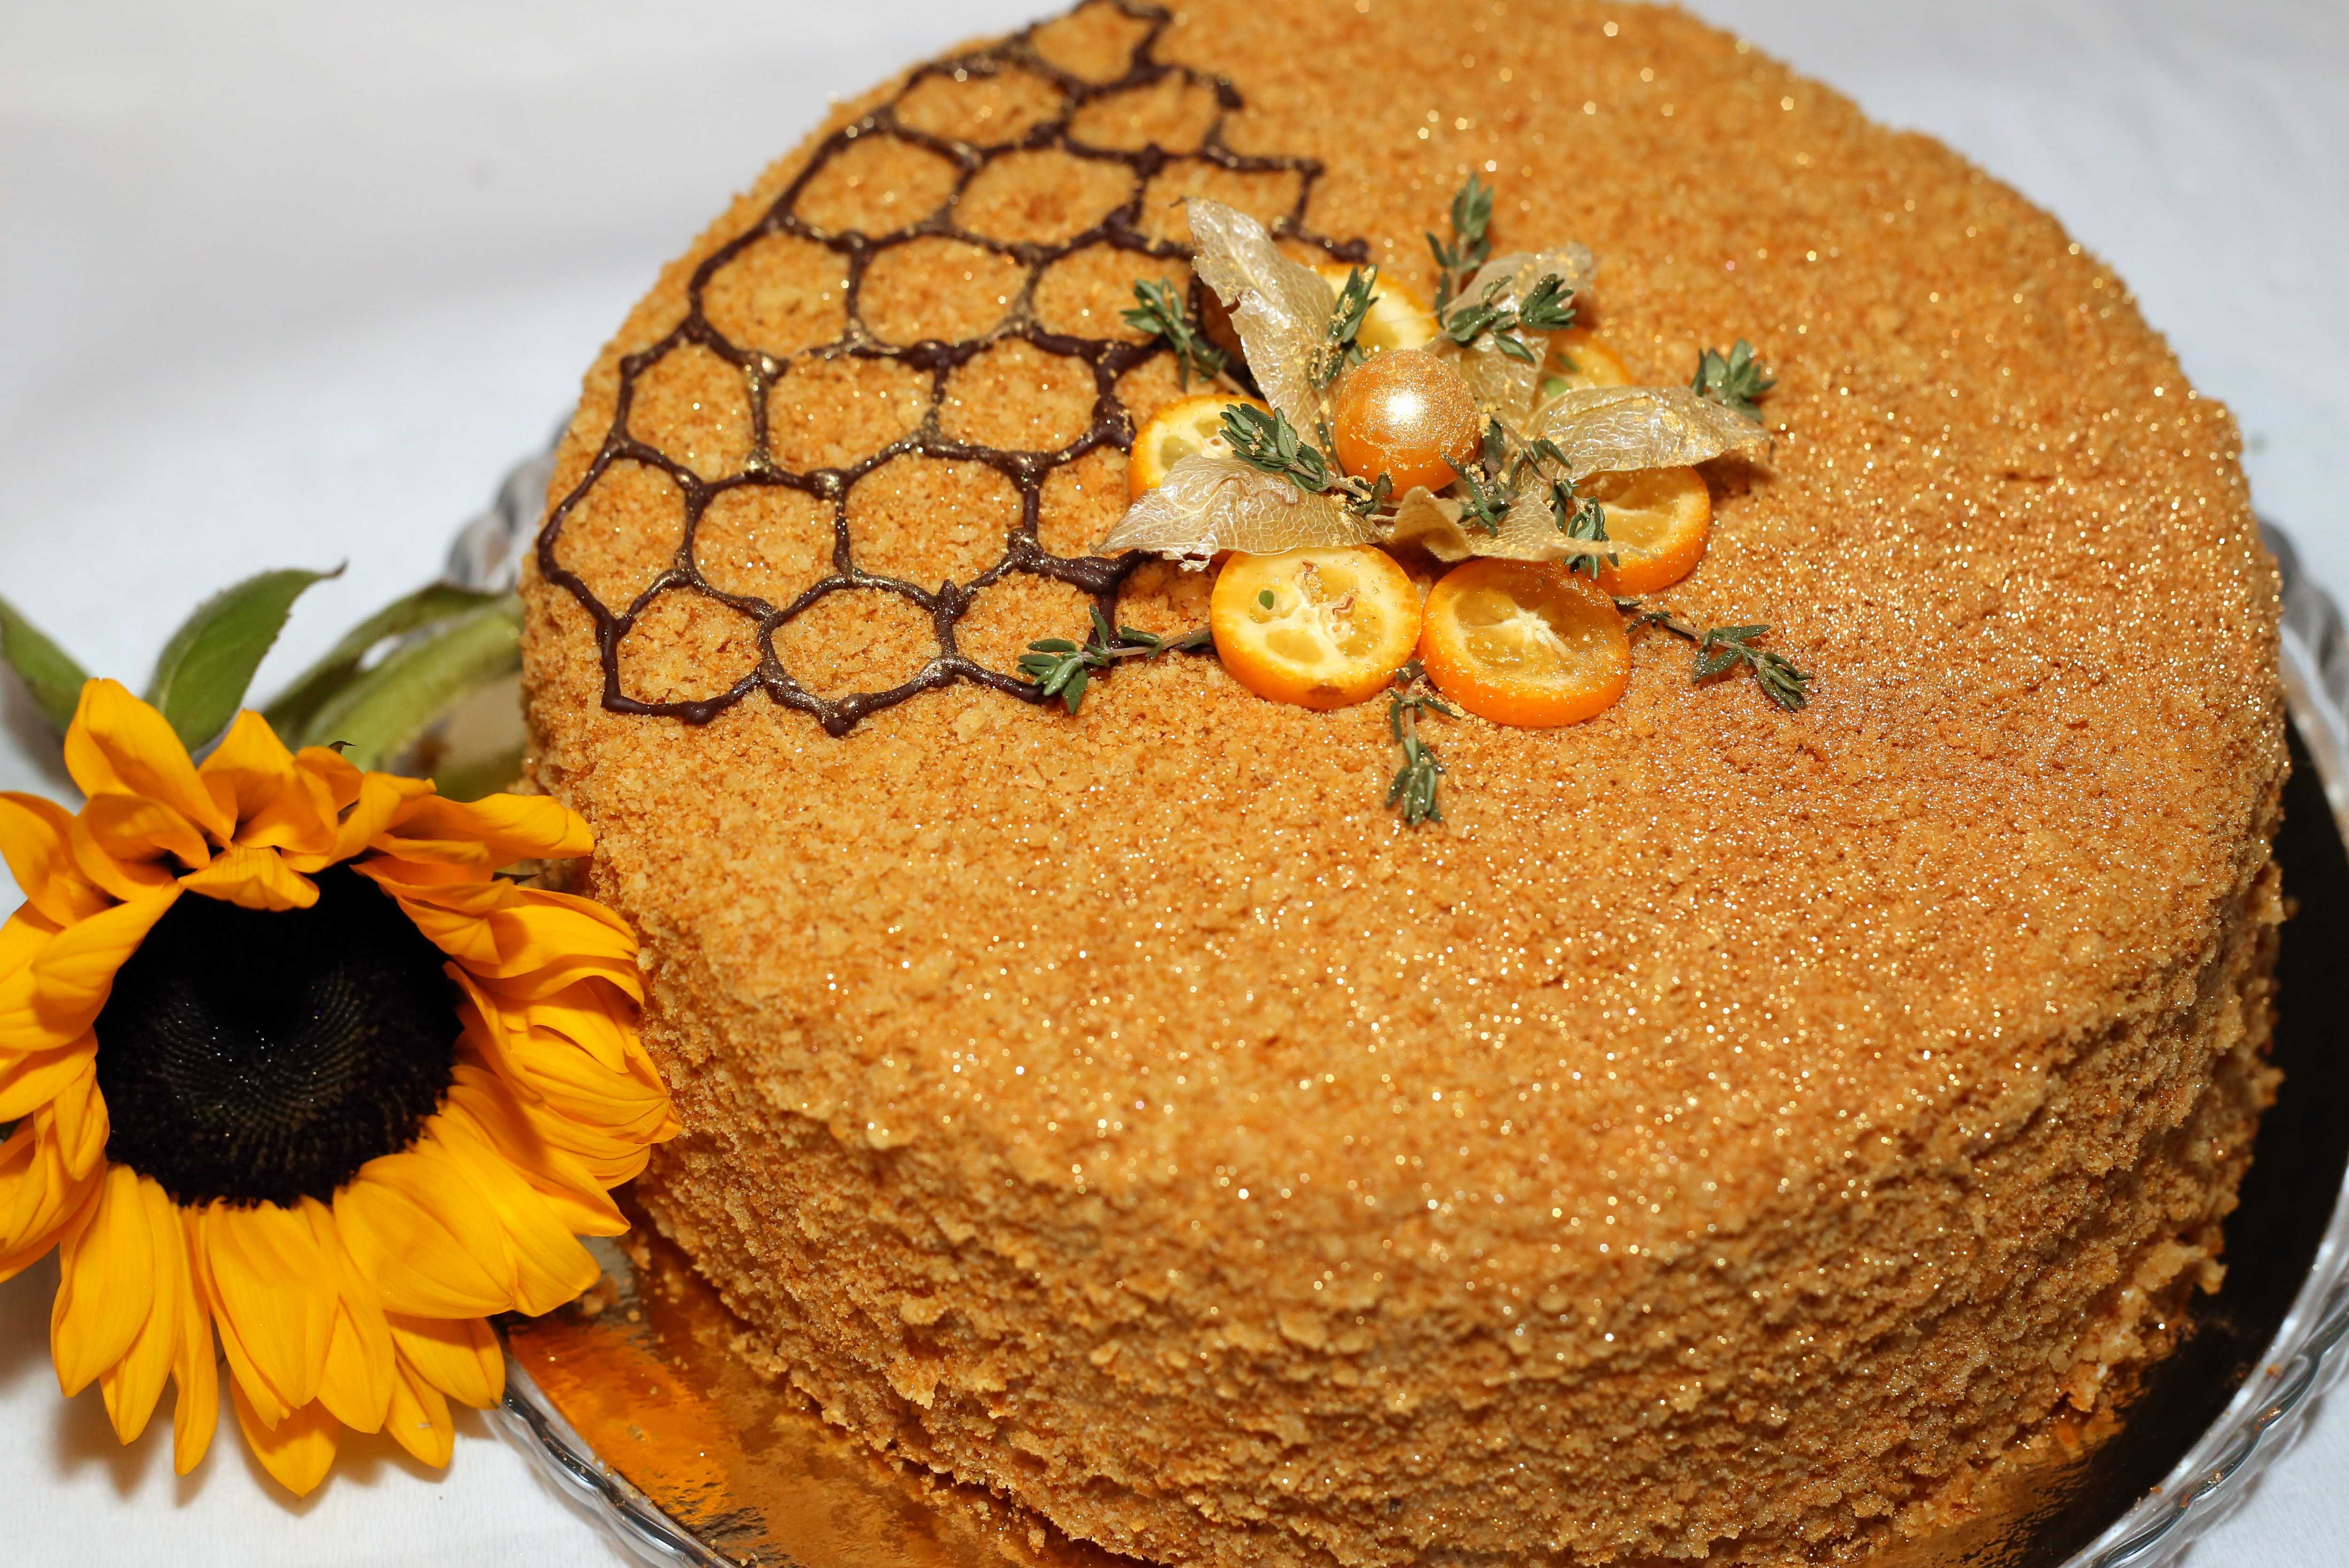 Торт медовик - классический рецепт с фото, пошагово описывающий приготовление десерта.